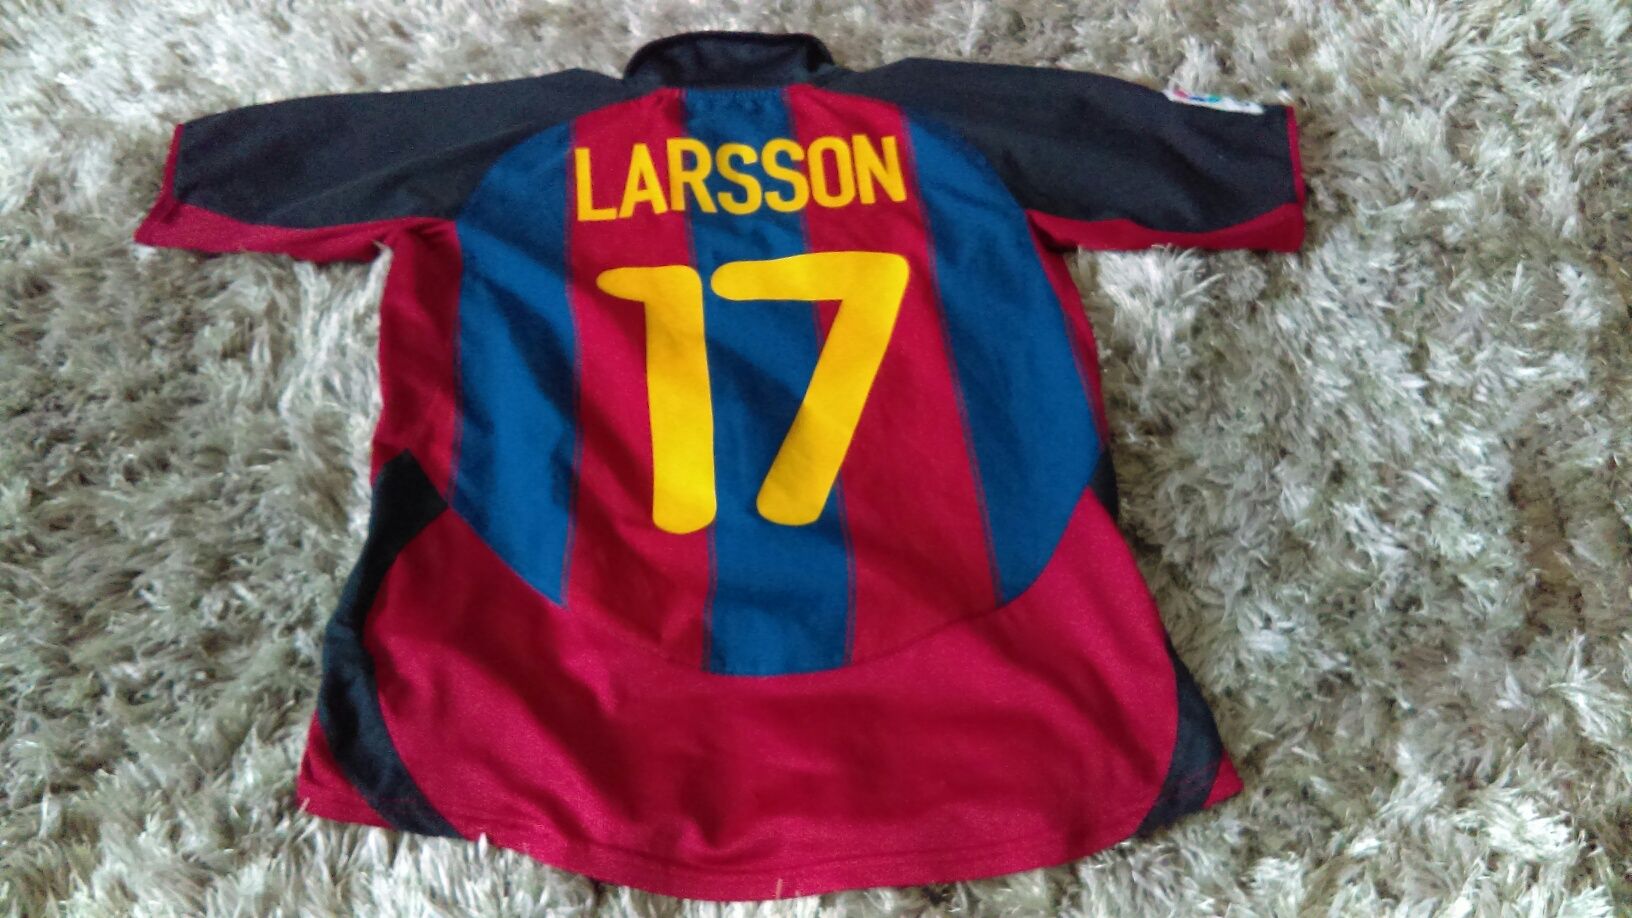 Koszulka Barcelony, 17 Larsson